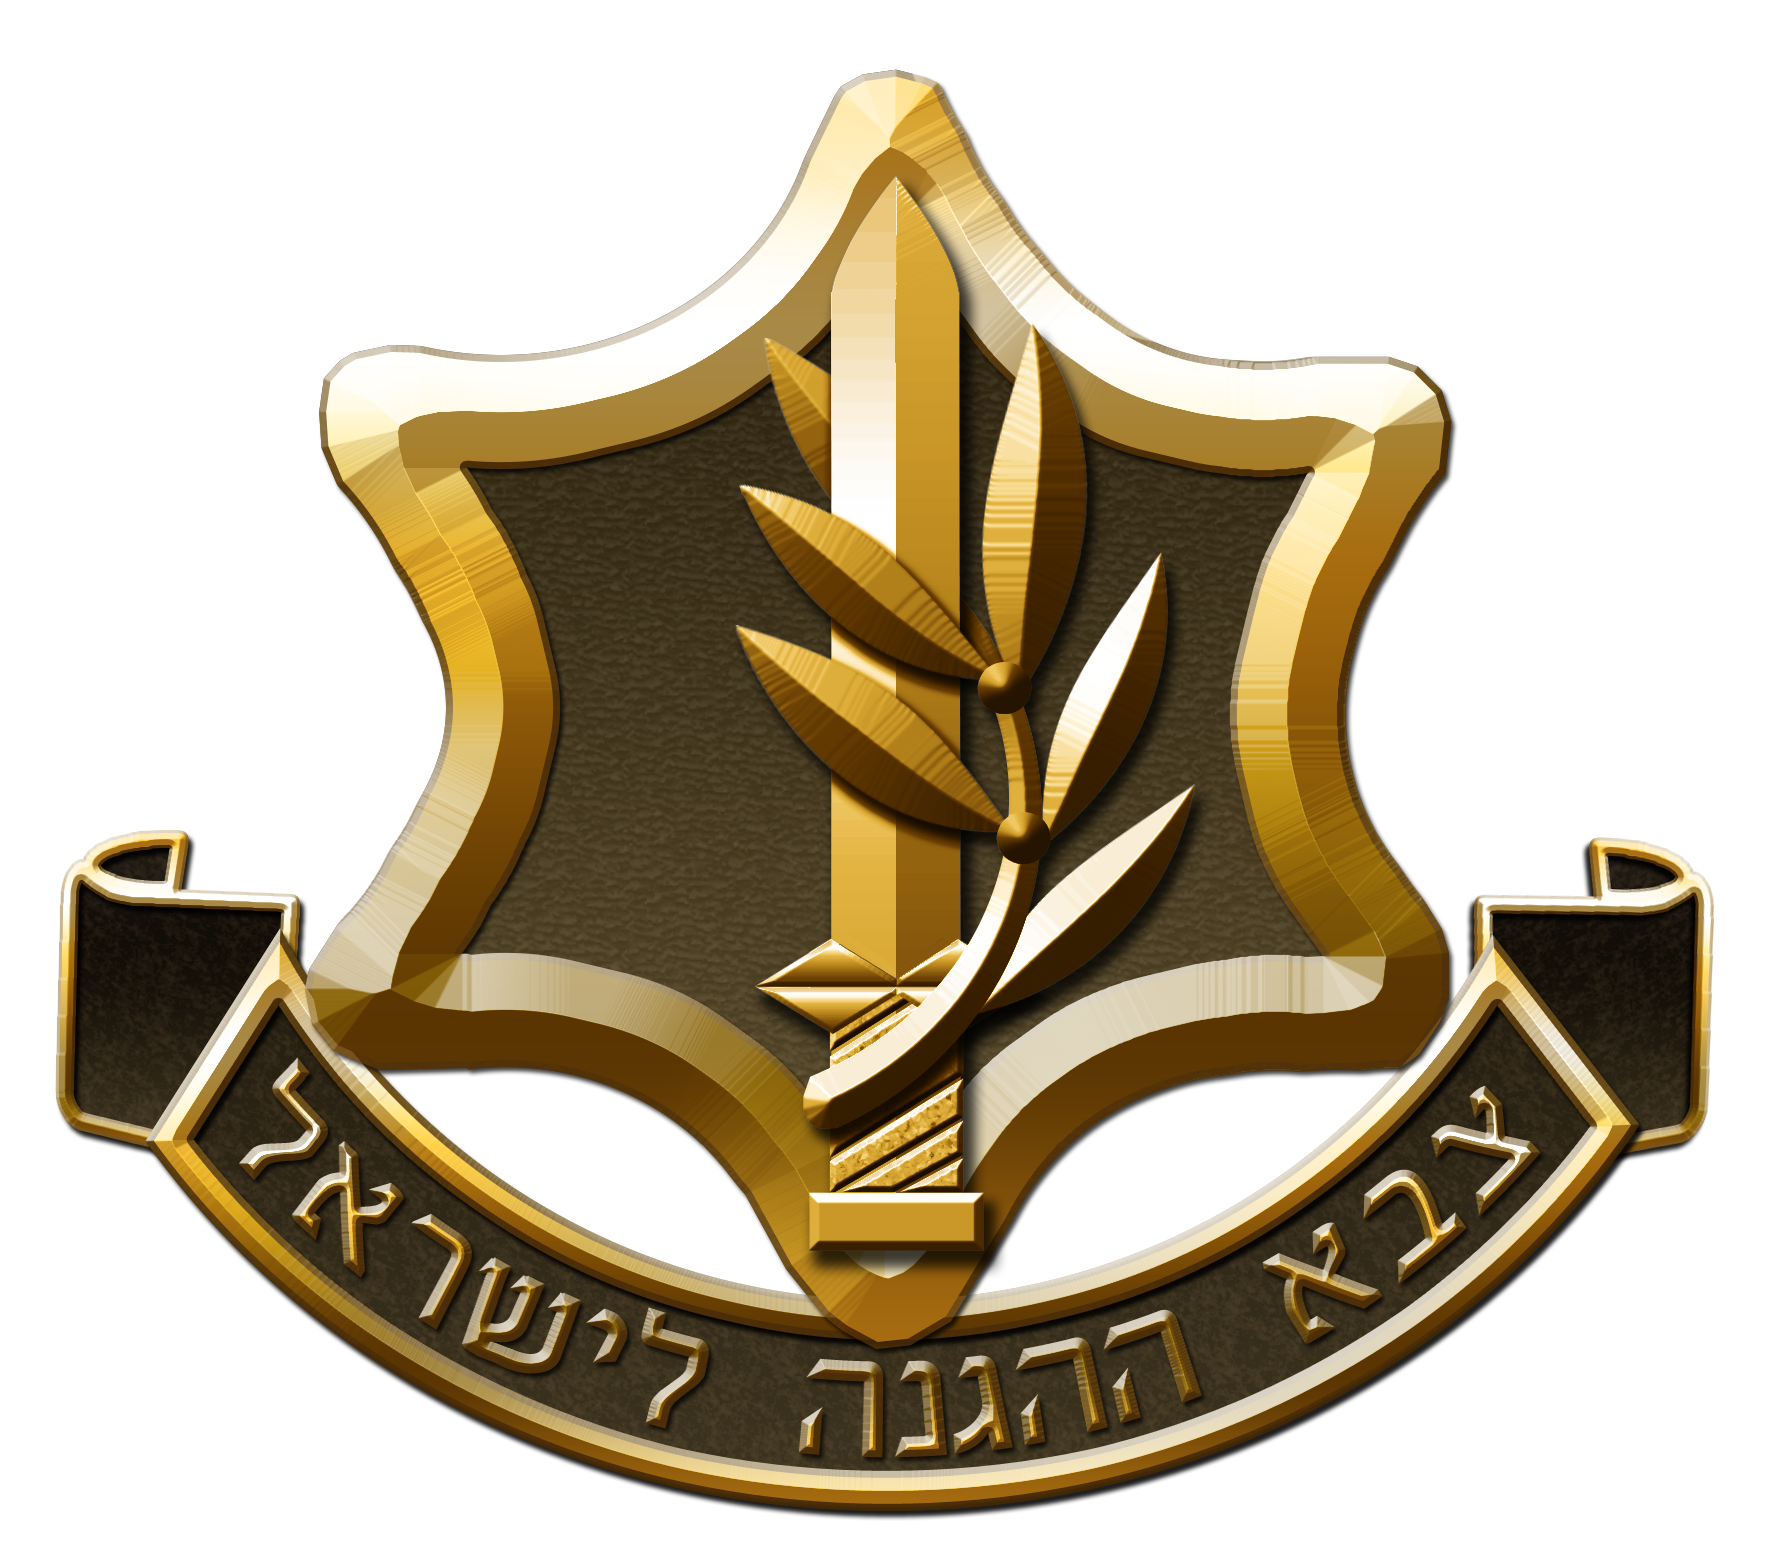 IDF_new